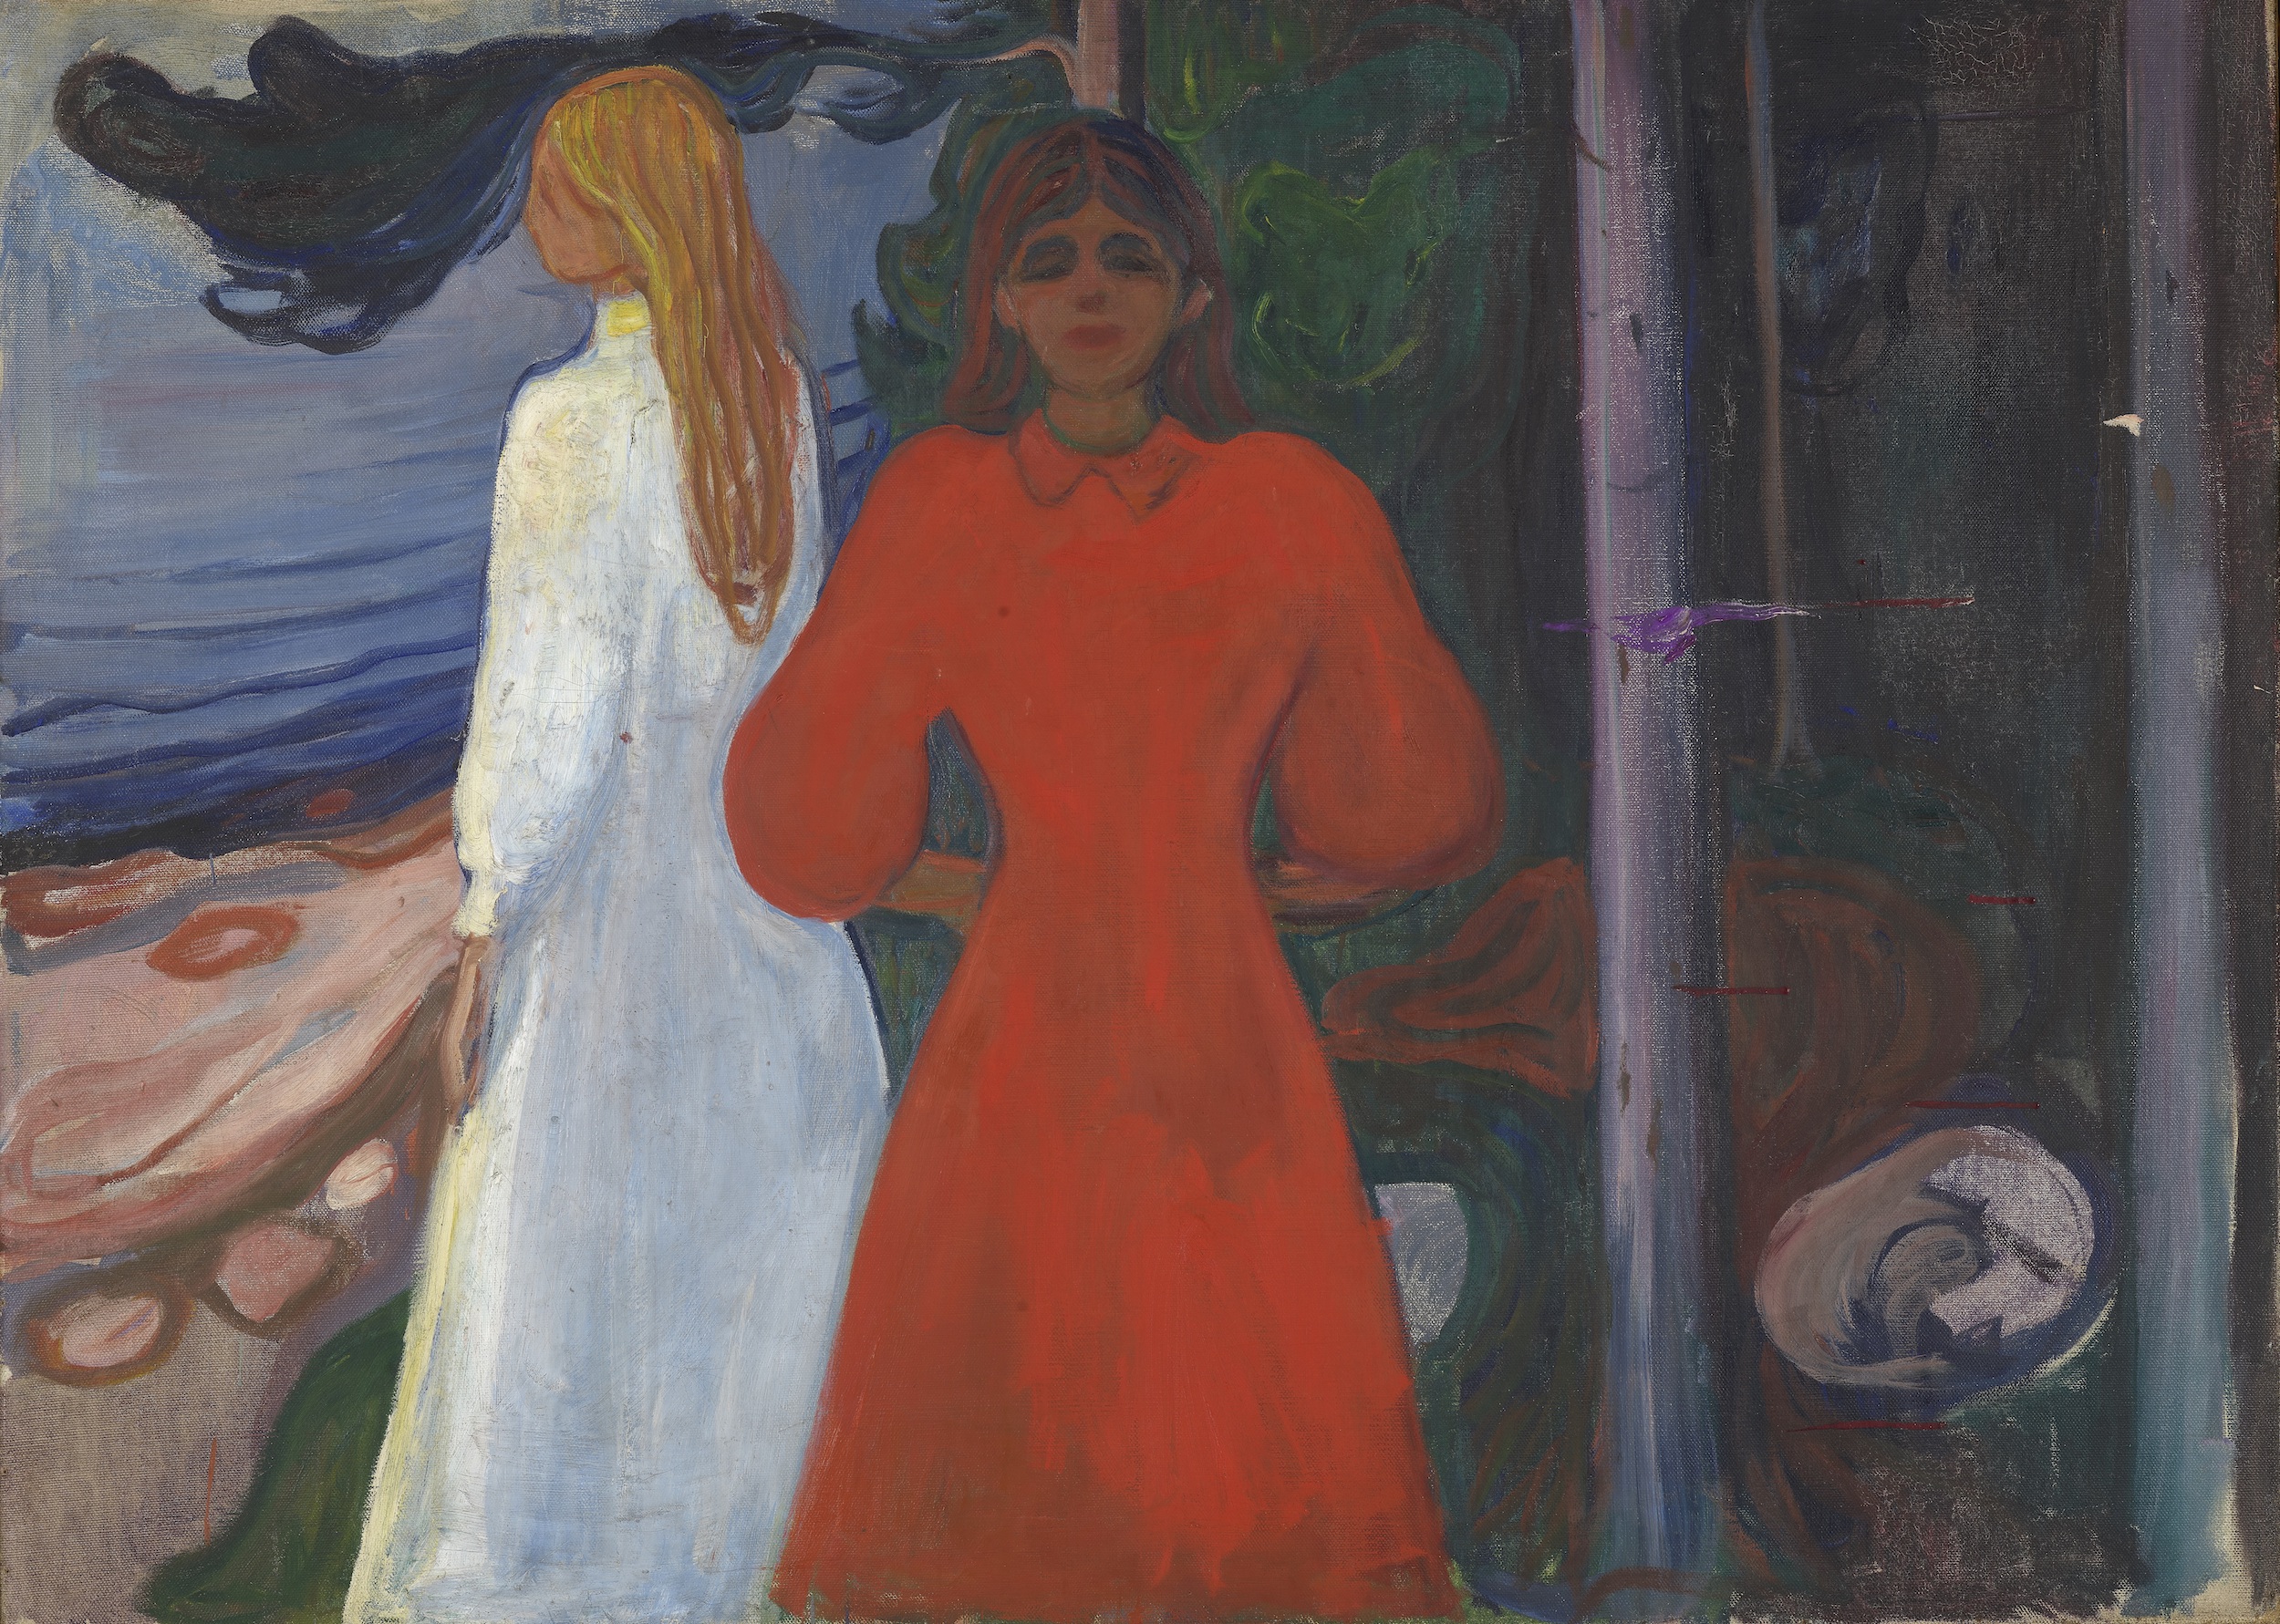 Edvard Munch (1863-1944), Rouge et blanc, 1899-1900. Huile sur toile, 93,5 x 129,5 cm. Oslo, Munchmuseet. Photo service de presse. © Munchmuseet – MM.M.00460